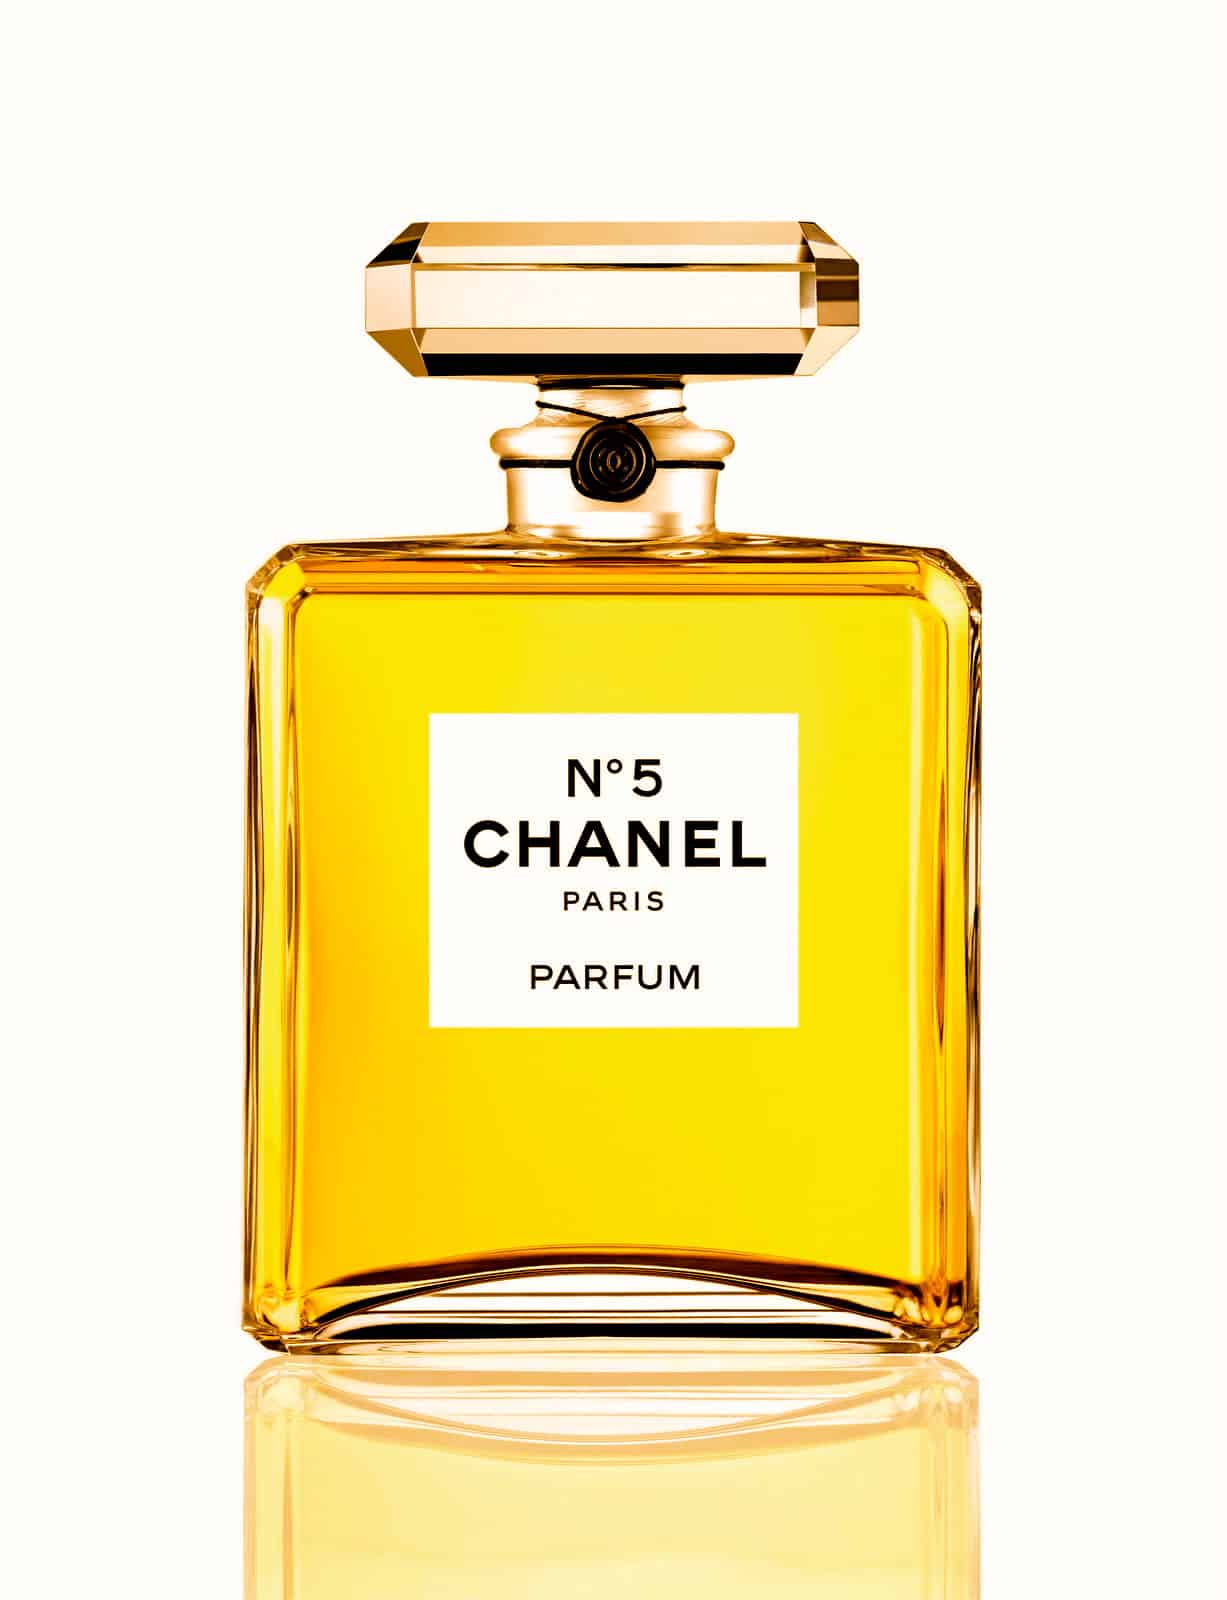 ادکلن مردانه شانل گرند ایکستریت (Chanel Grand Extrait) توسط یک عطر ساز جادویی فرانسوی به نام ارنست بیوکس (Ernest Beaux) در سال ۱۹۲۱ ساخته شد